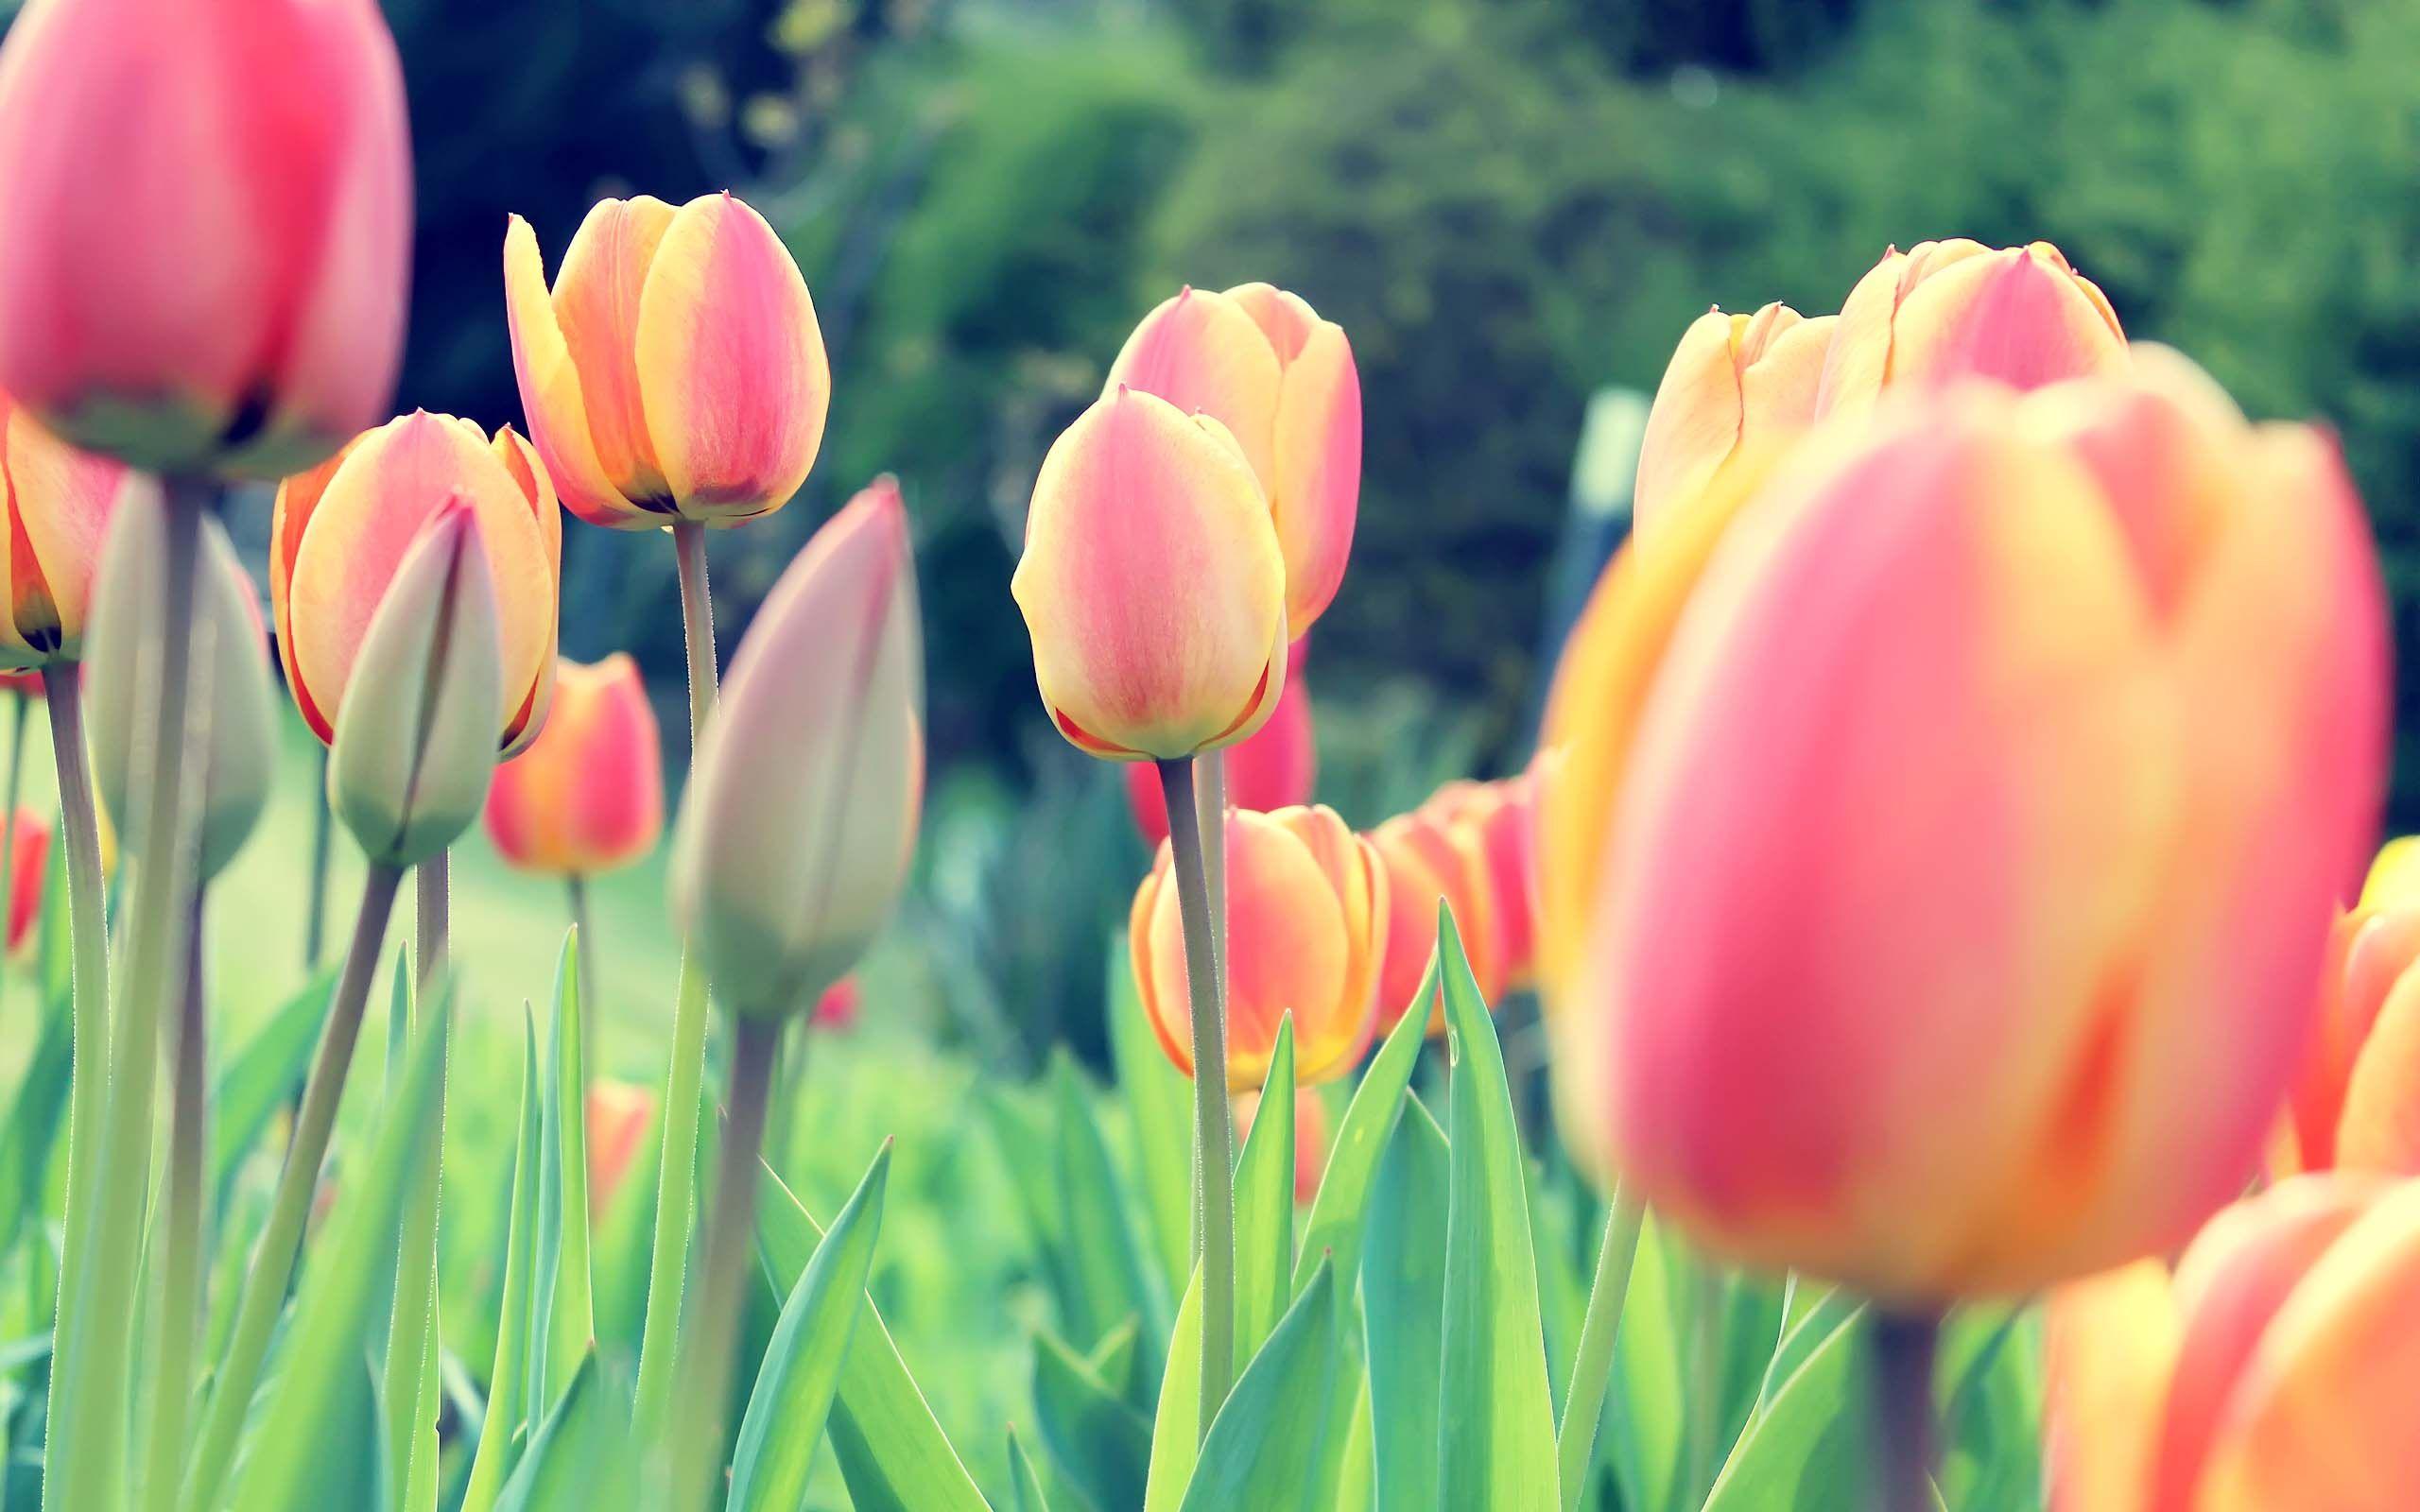 Flower Tulips Free Desktop Wallpaper 2560x1600. Free desktop